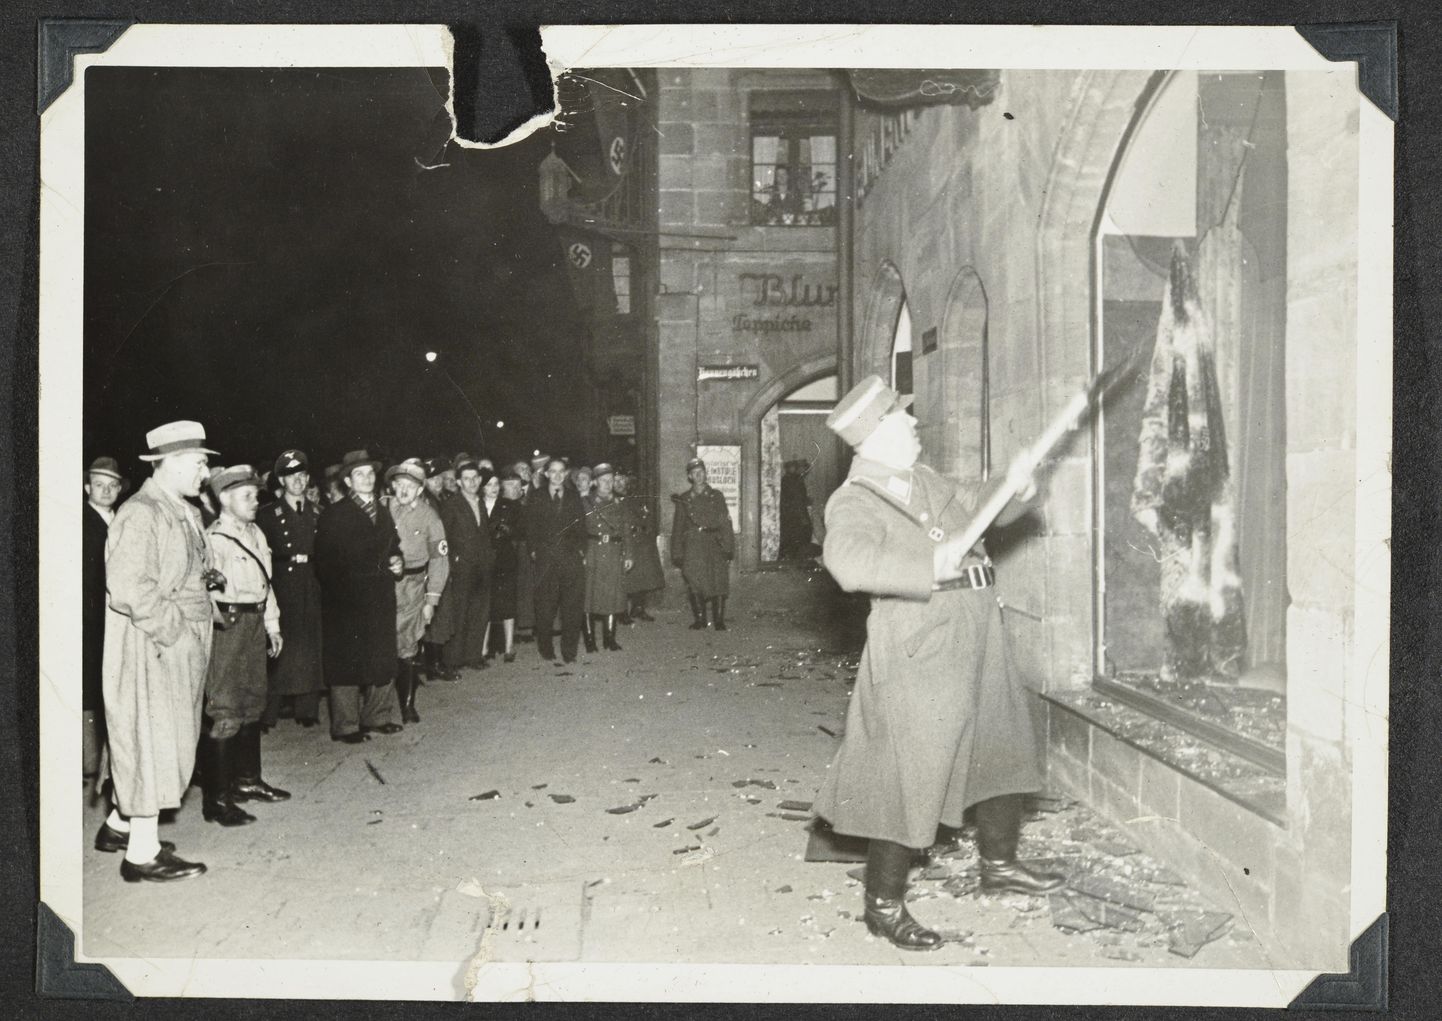 Sakslased vaatamas 10. novembril 1938 Fürthis, kuidas natsiohvitser lõhub juudile kuuluva kaupluse aknaklaasi. Kristalliöö käigus hävitasid natsid juutide poode, firmasid, kodusid ja sünagooge